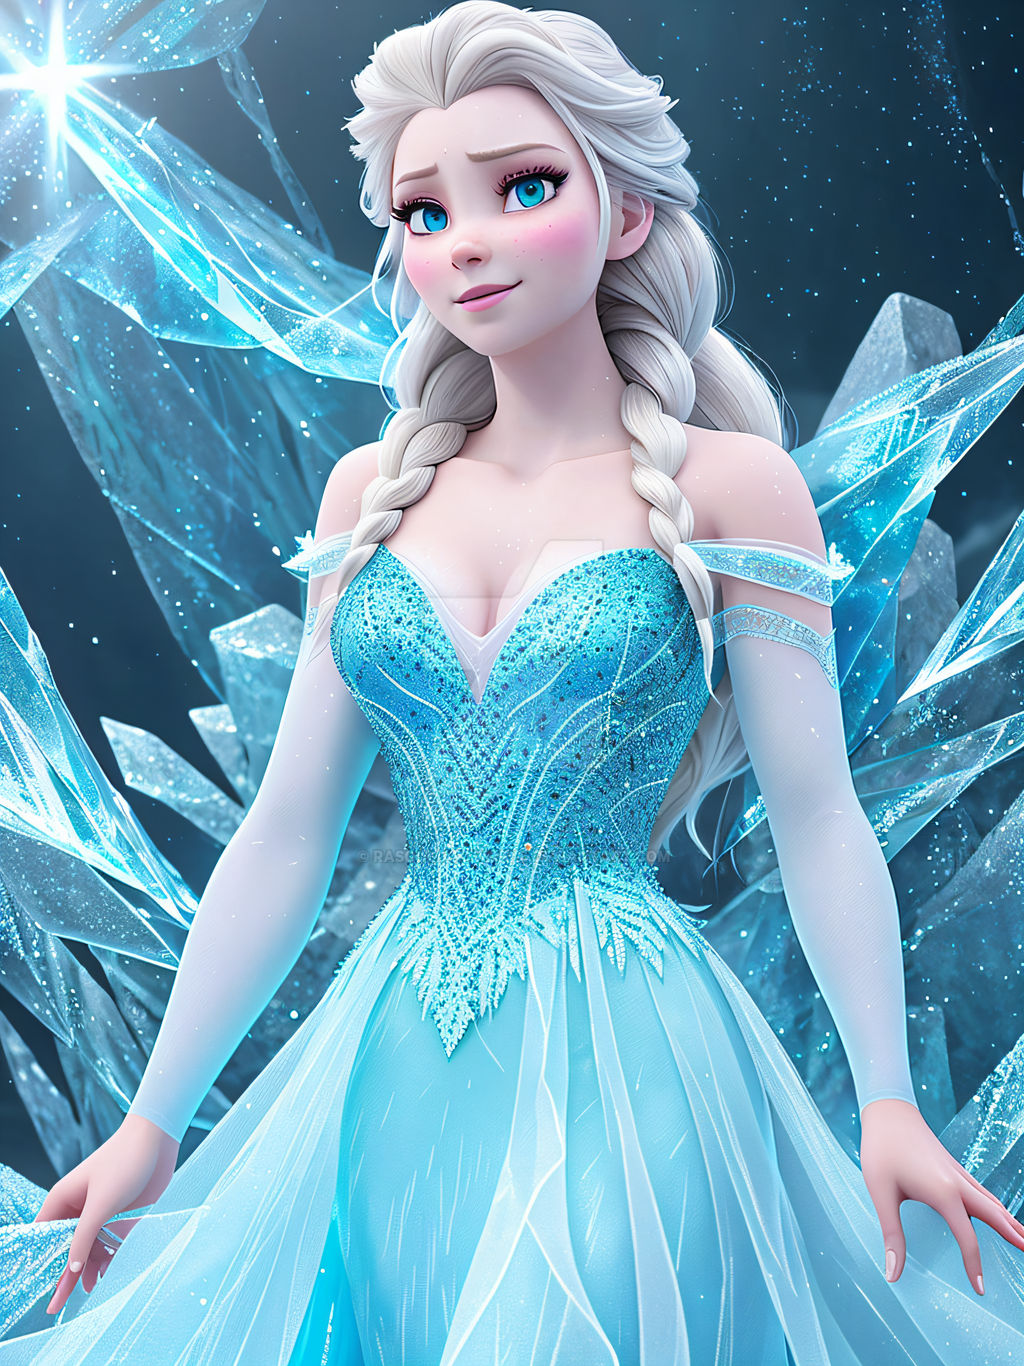 Elsa Cartoon Character from Frozen, 4k Elsa by RasooliArtworks on  DeviantArt, elsa frozen 